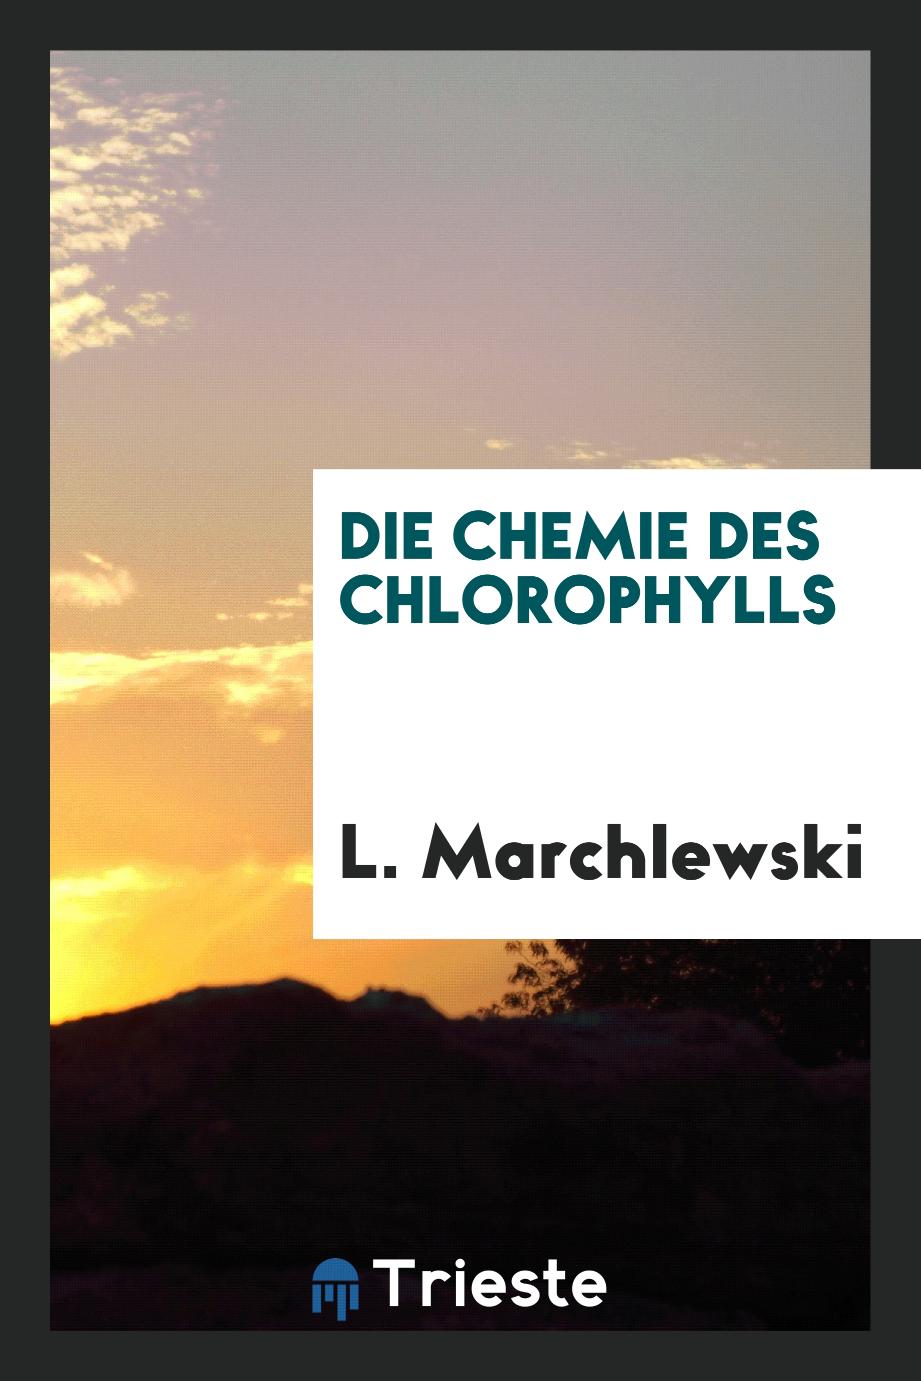 Die chemie des chlorophylls